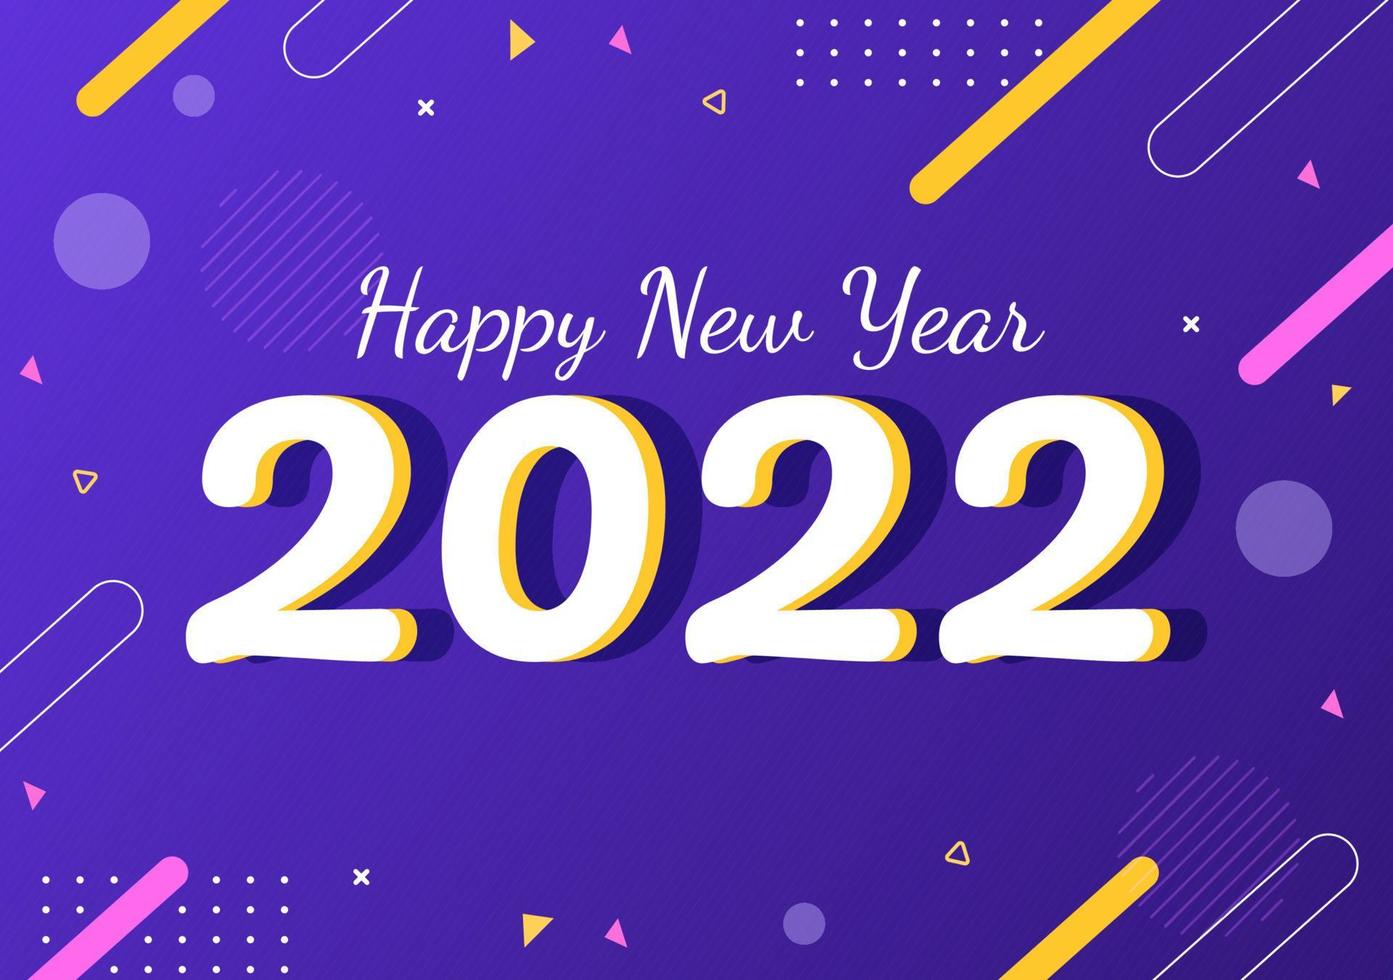 Gelukkig Nieuwjaar 2022 sjabloon platte ontwerp illustratie met linten en confetti op een kleurrijke achtergrond voor poster, brochure of banner vector